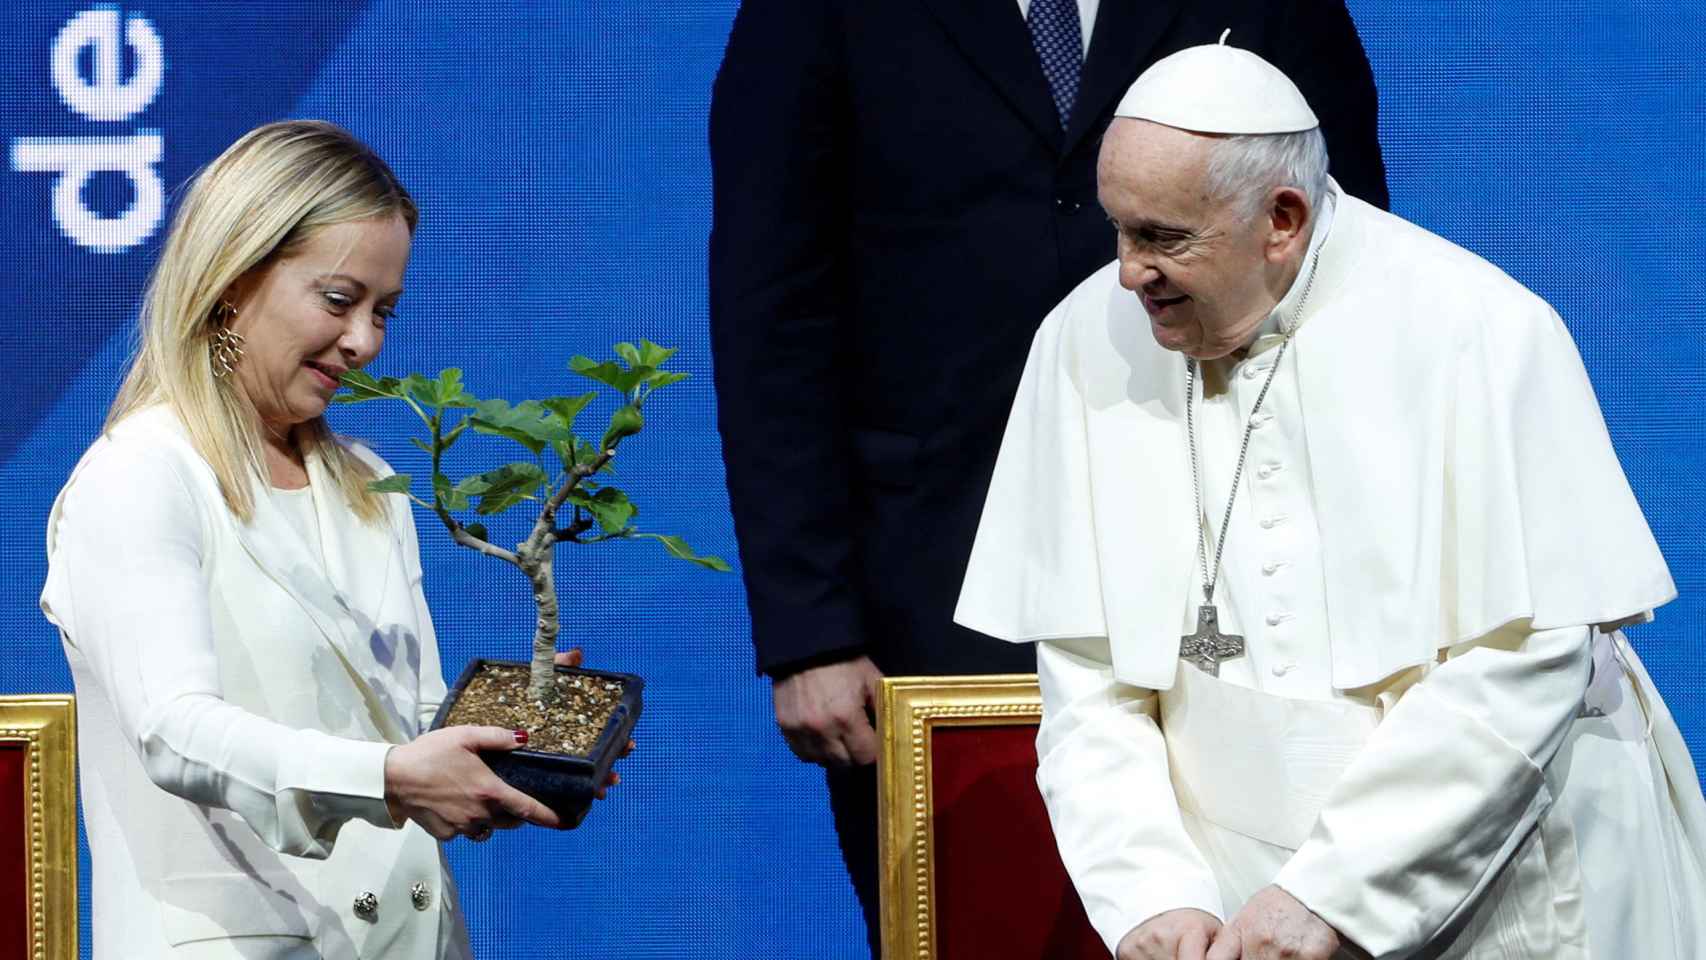 El Papa le regala un bonsái a Meloni.